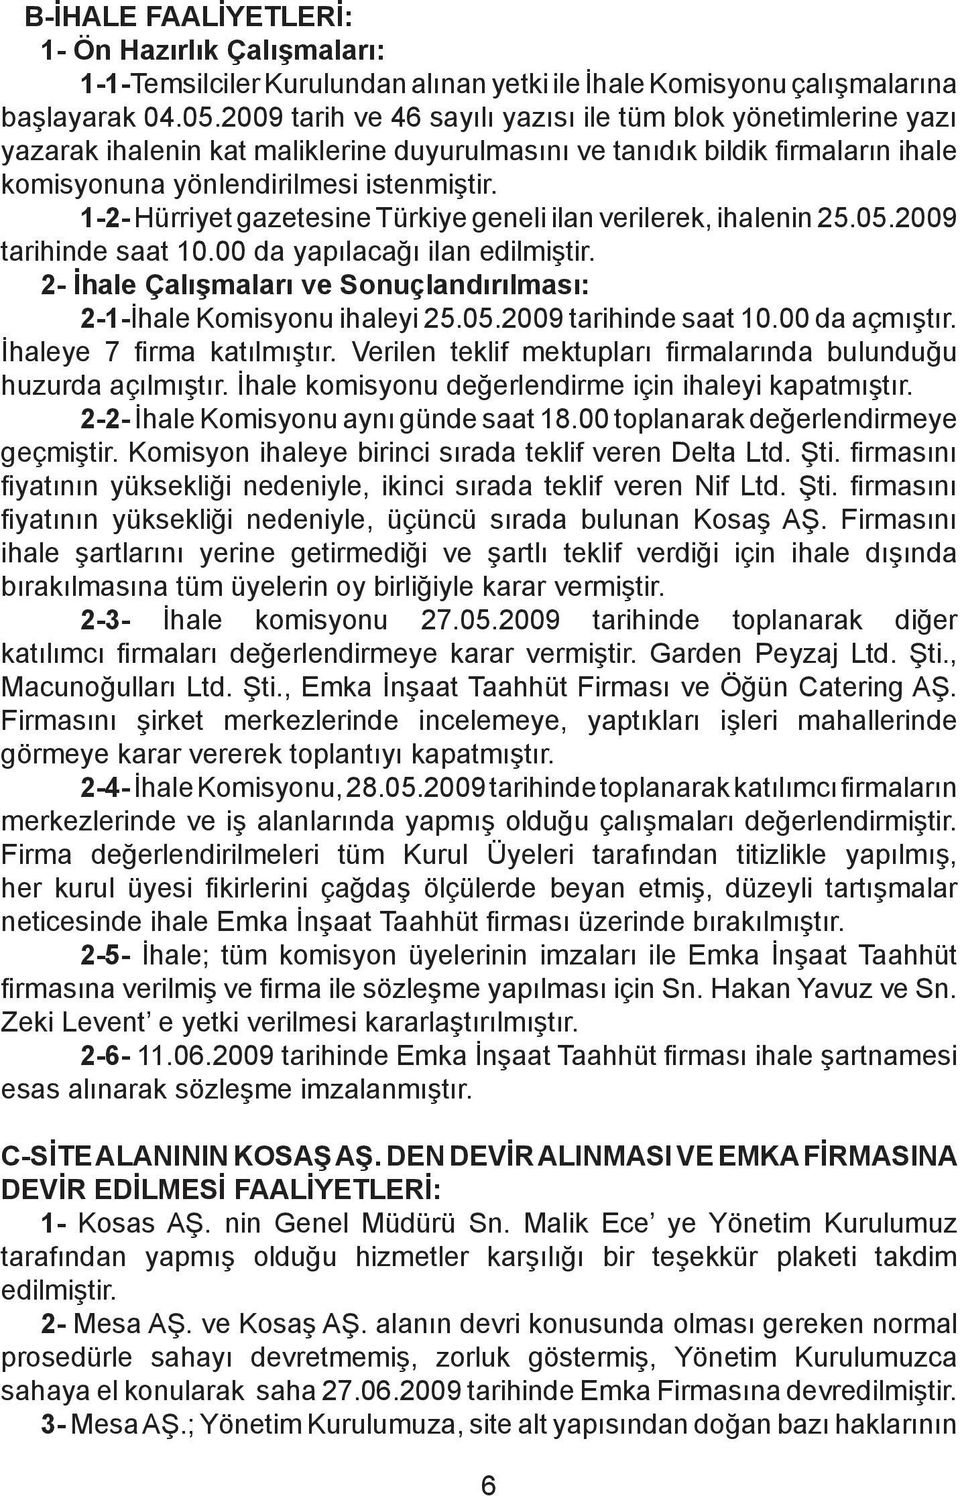 1-2- Hürriyet gazetesine Türkiye geneli ilan verilerek, ihalenin 25.05.2009 tarihinde saat 10.00 da yapılacağı ilan edilmiştir.